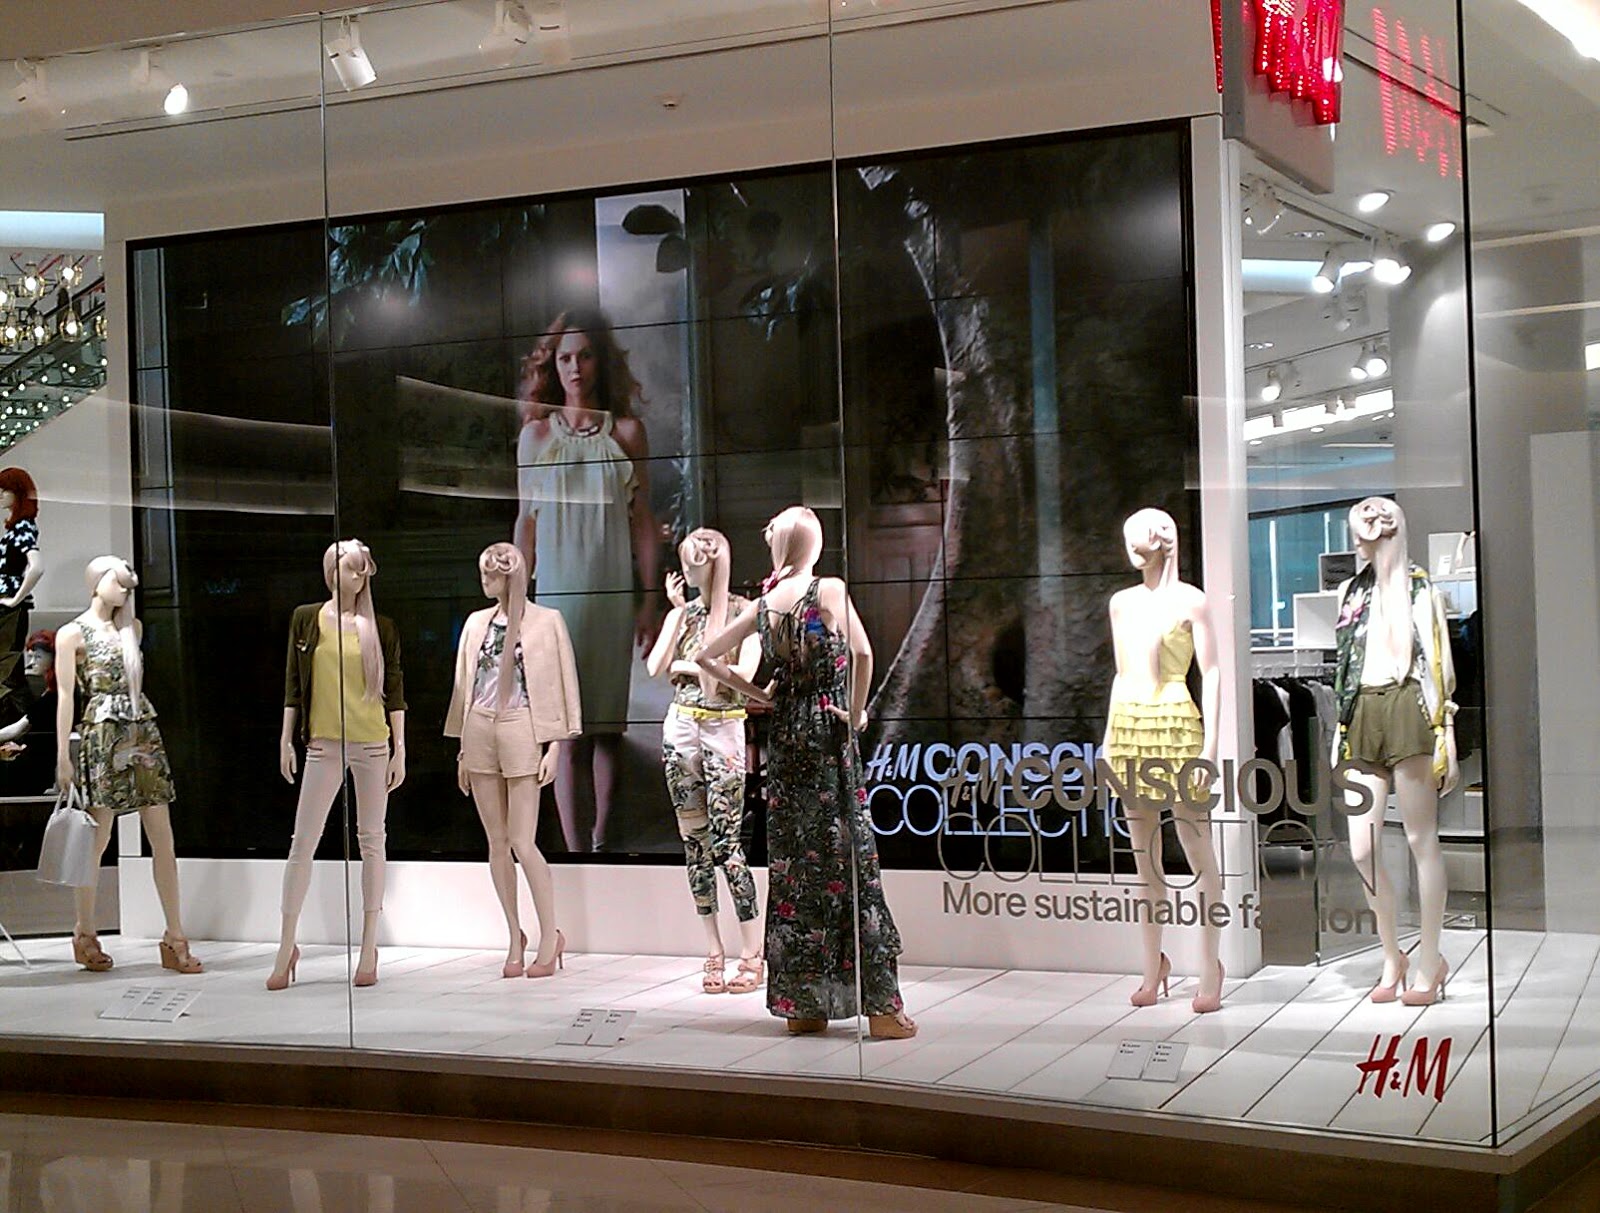 H&M Conscious Collection Windows, Bangkok